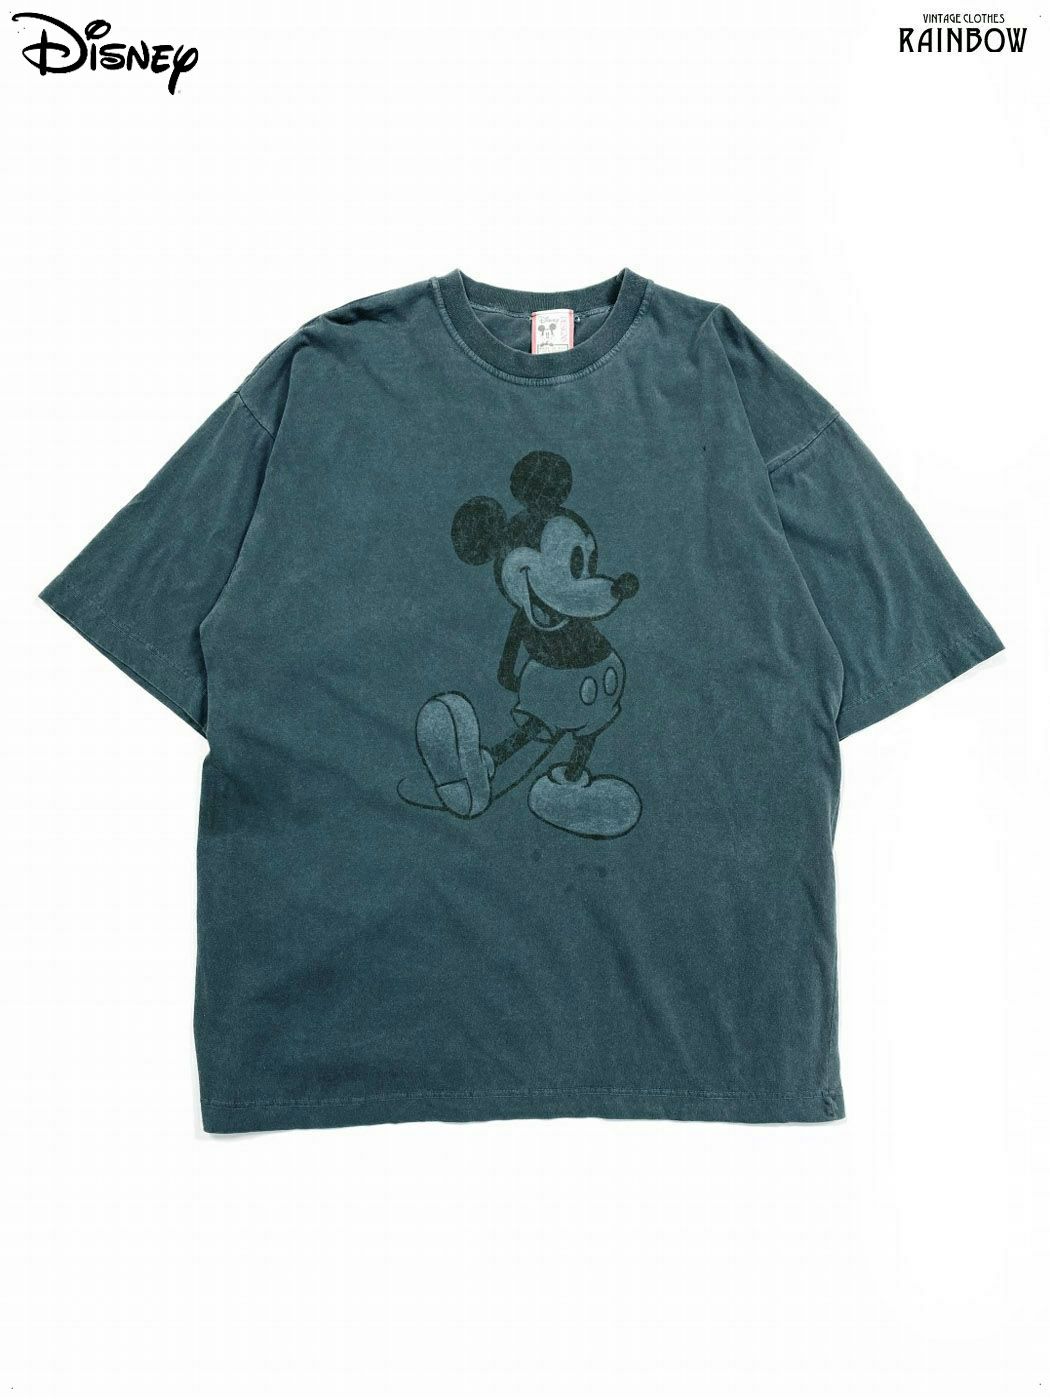 アメリカ古着アメリカ製ディズニーミッキーマウス半袖Tシャツ緑 